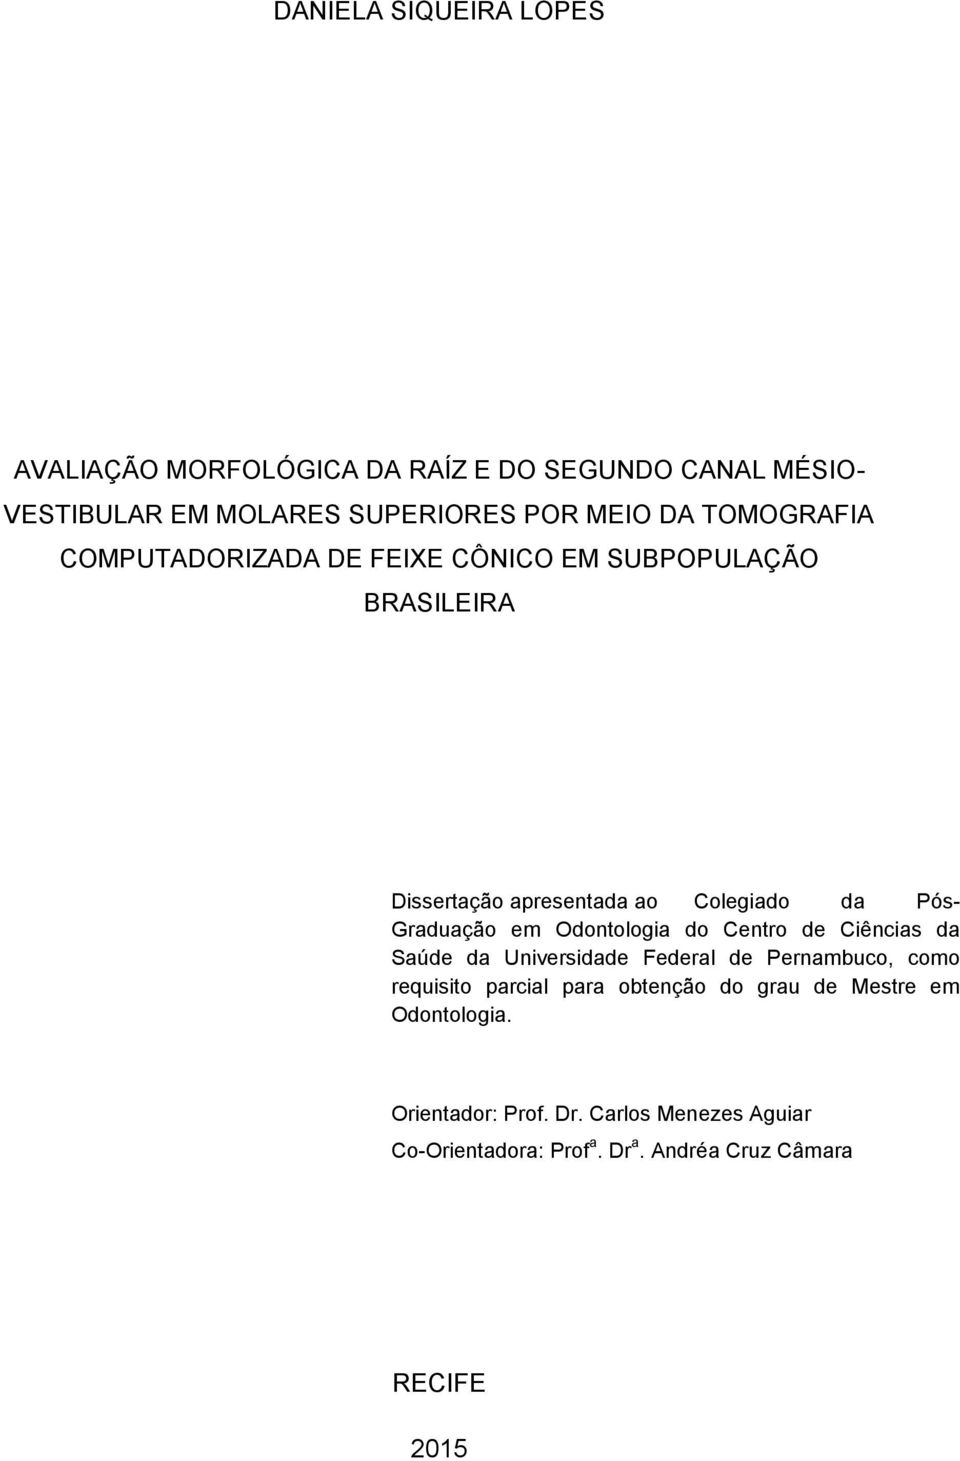 Odontologia do Centro de Ciências da Saúde da Universidade Federal de Pernambuco, como requisito parcial para obtenção do grau